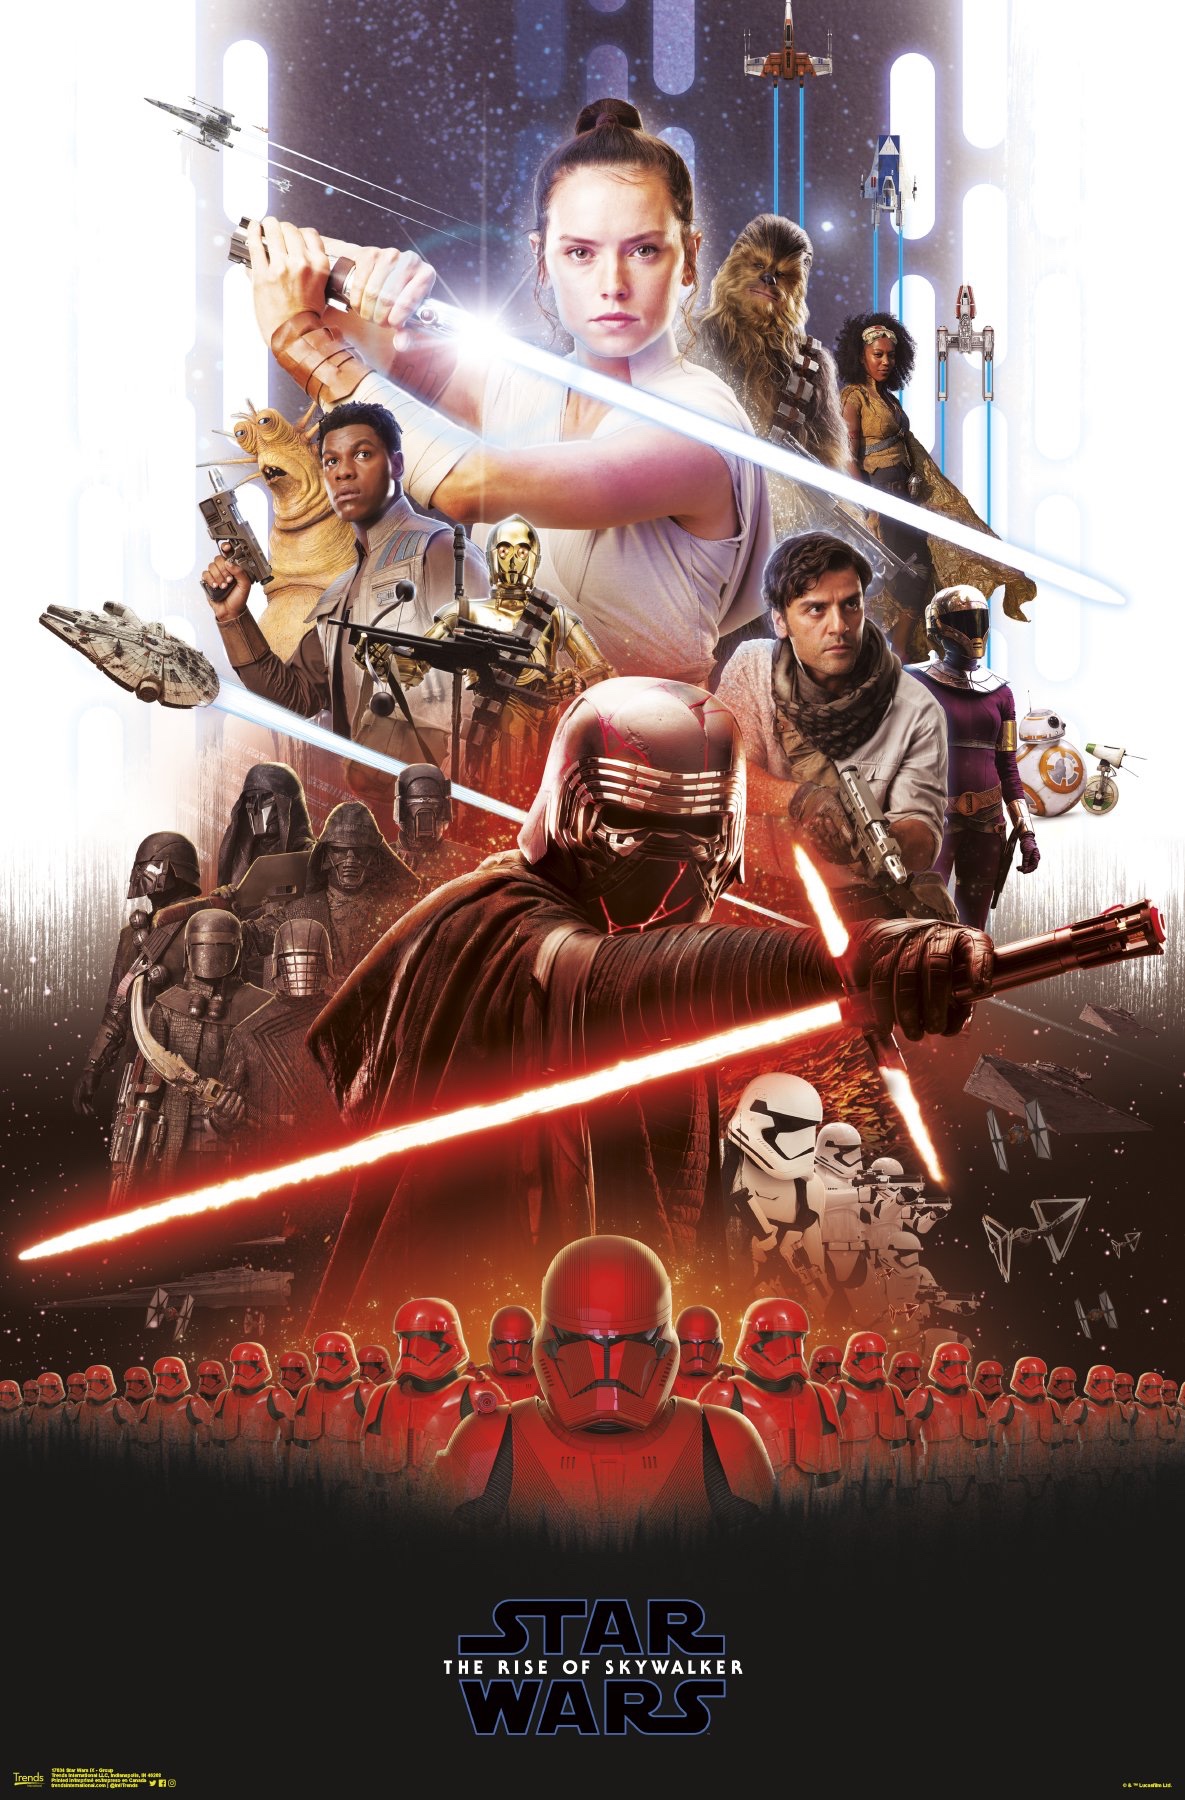 Résultat de recherche d'images pour "Star Wars : L'ascension de Skywalker affiche"